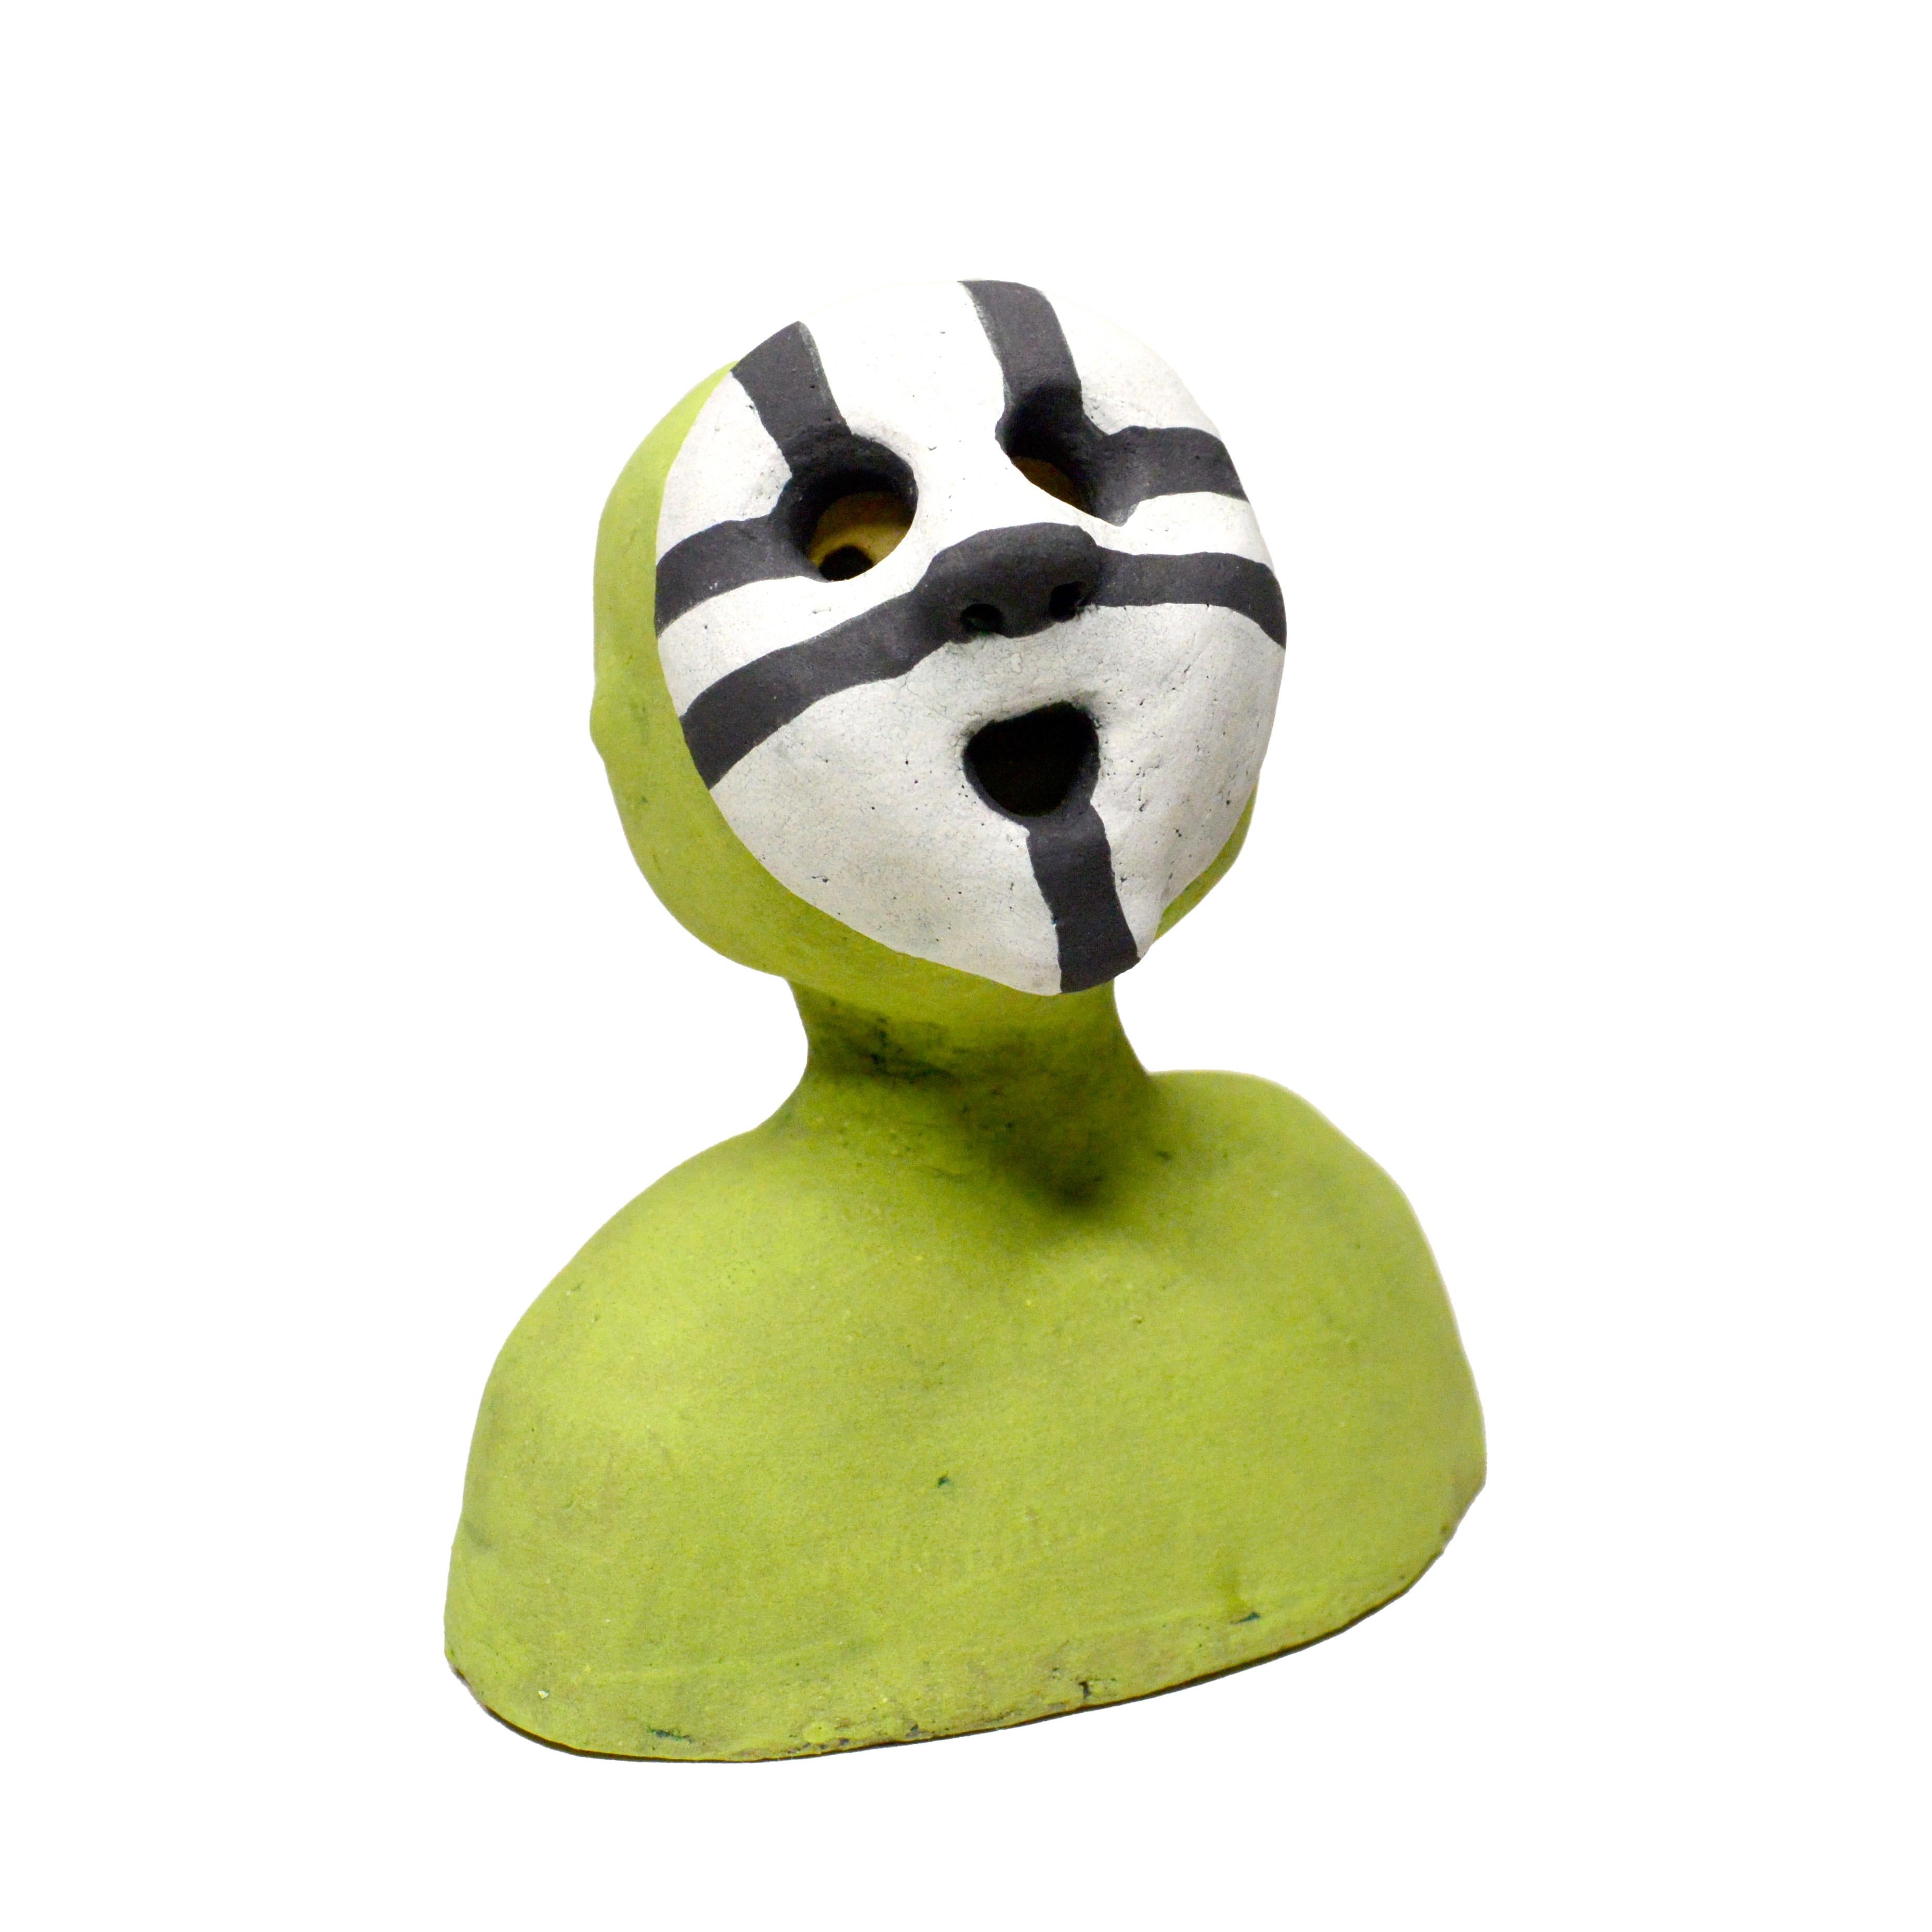 Renate Frotscher Figurative Sculpture - Pin·e·co 004 Original Ceramic Sculpture with mask